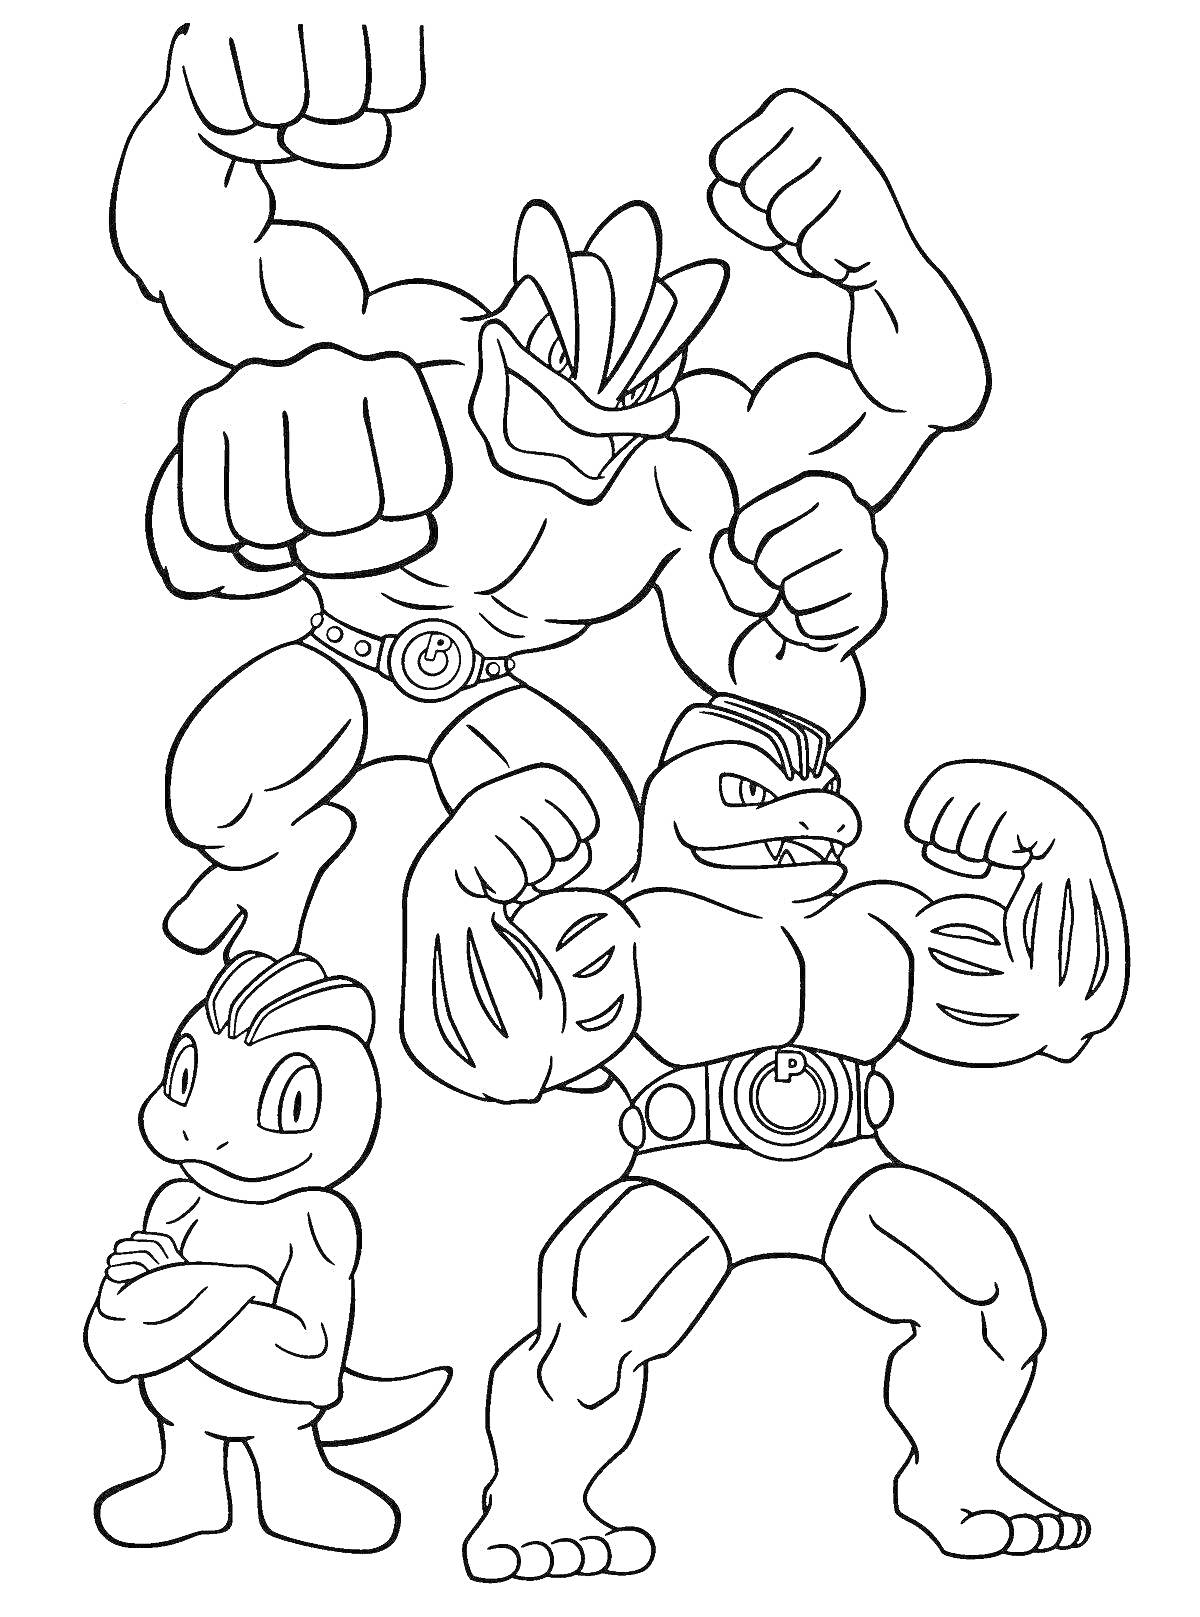 Раскраска Три персонажа Гуджитсу с мускулистыми телами и боевыми позами